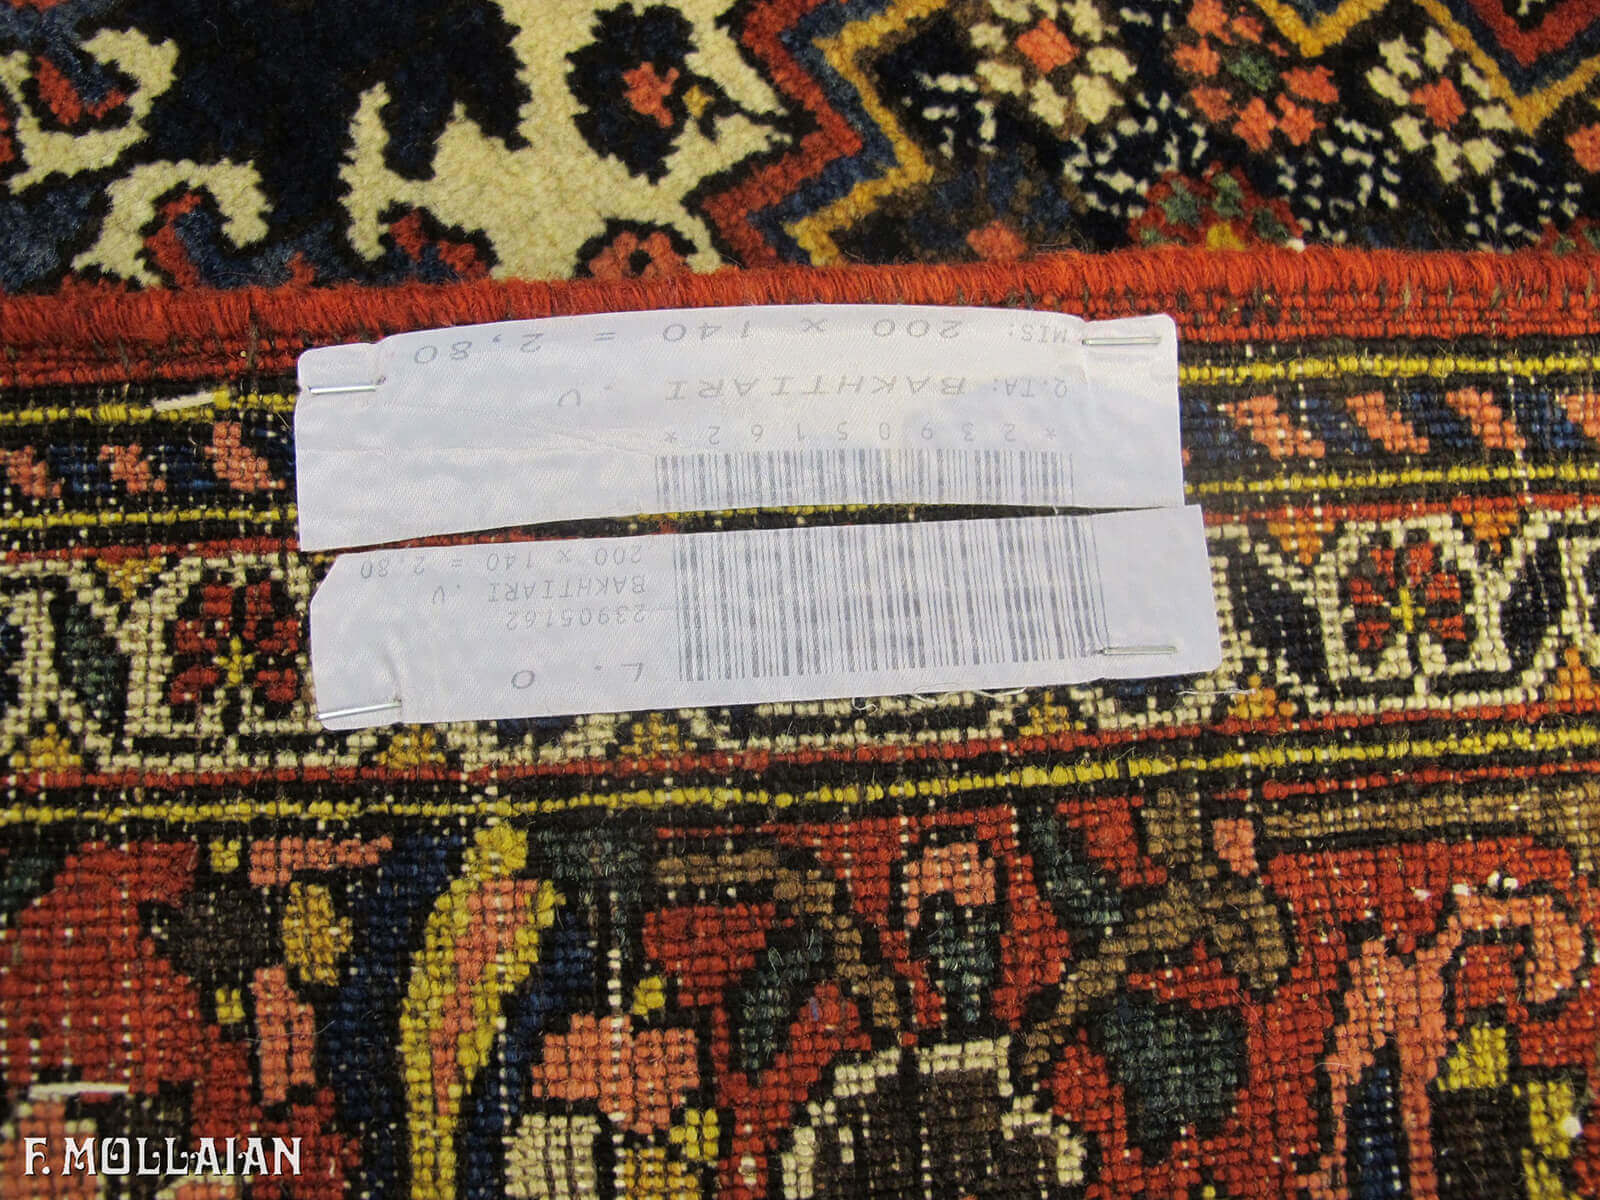 Antique Persian Bakhtiari Saman Rug n°:23905162